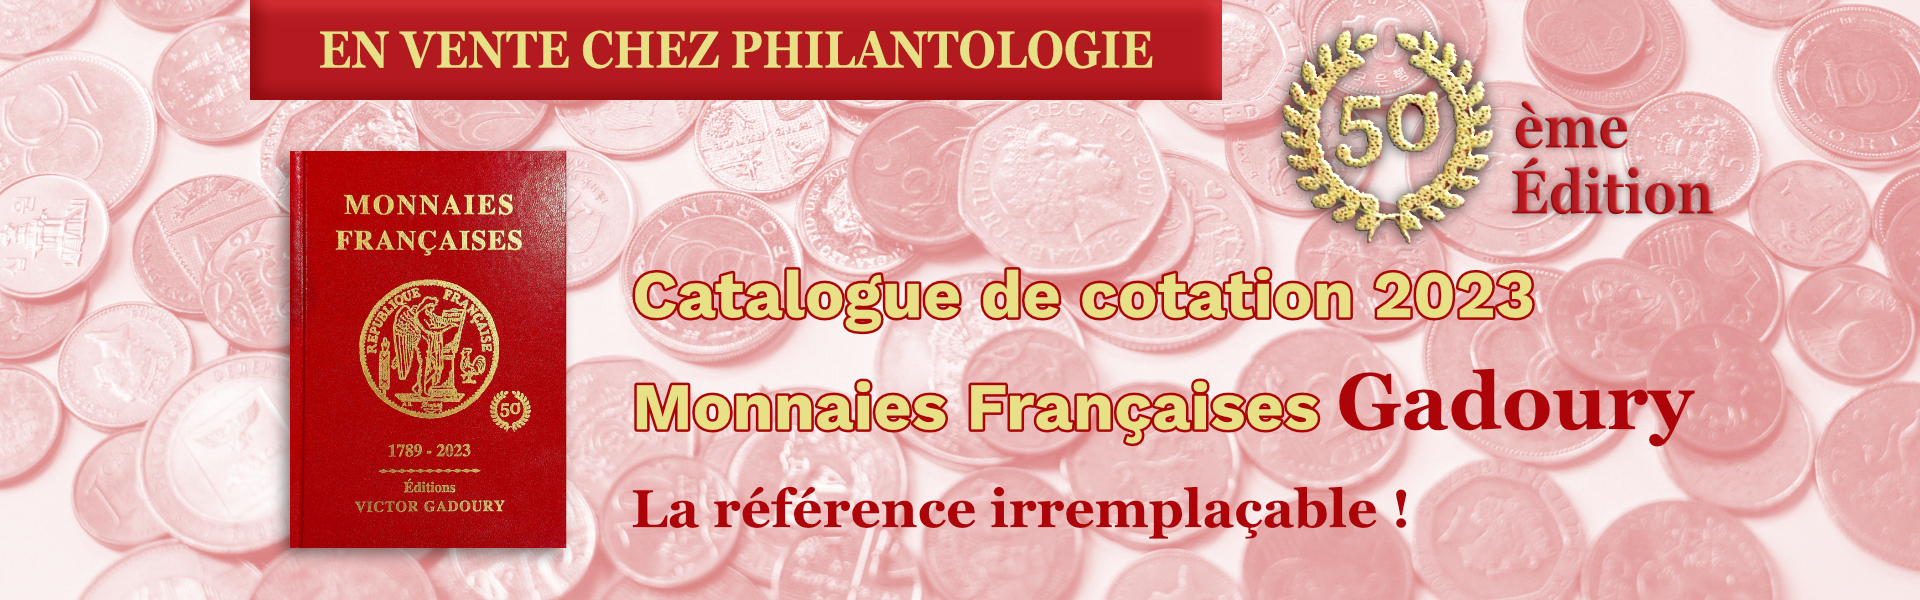 Catalogue de cotation monnaies françaises Gadoury 2023.